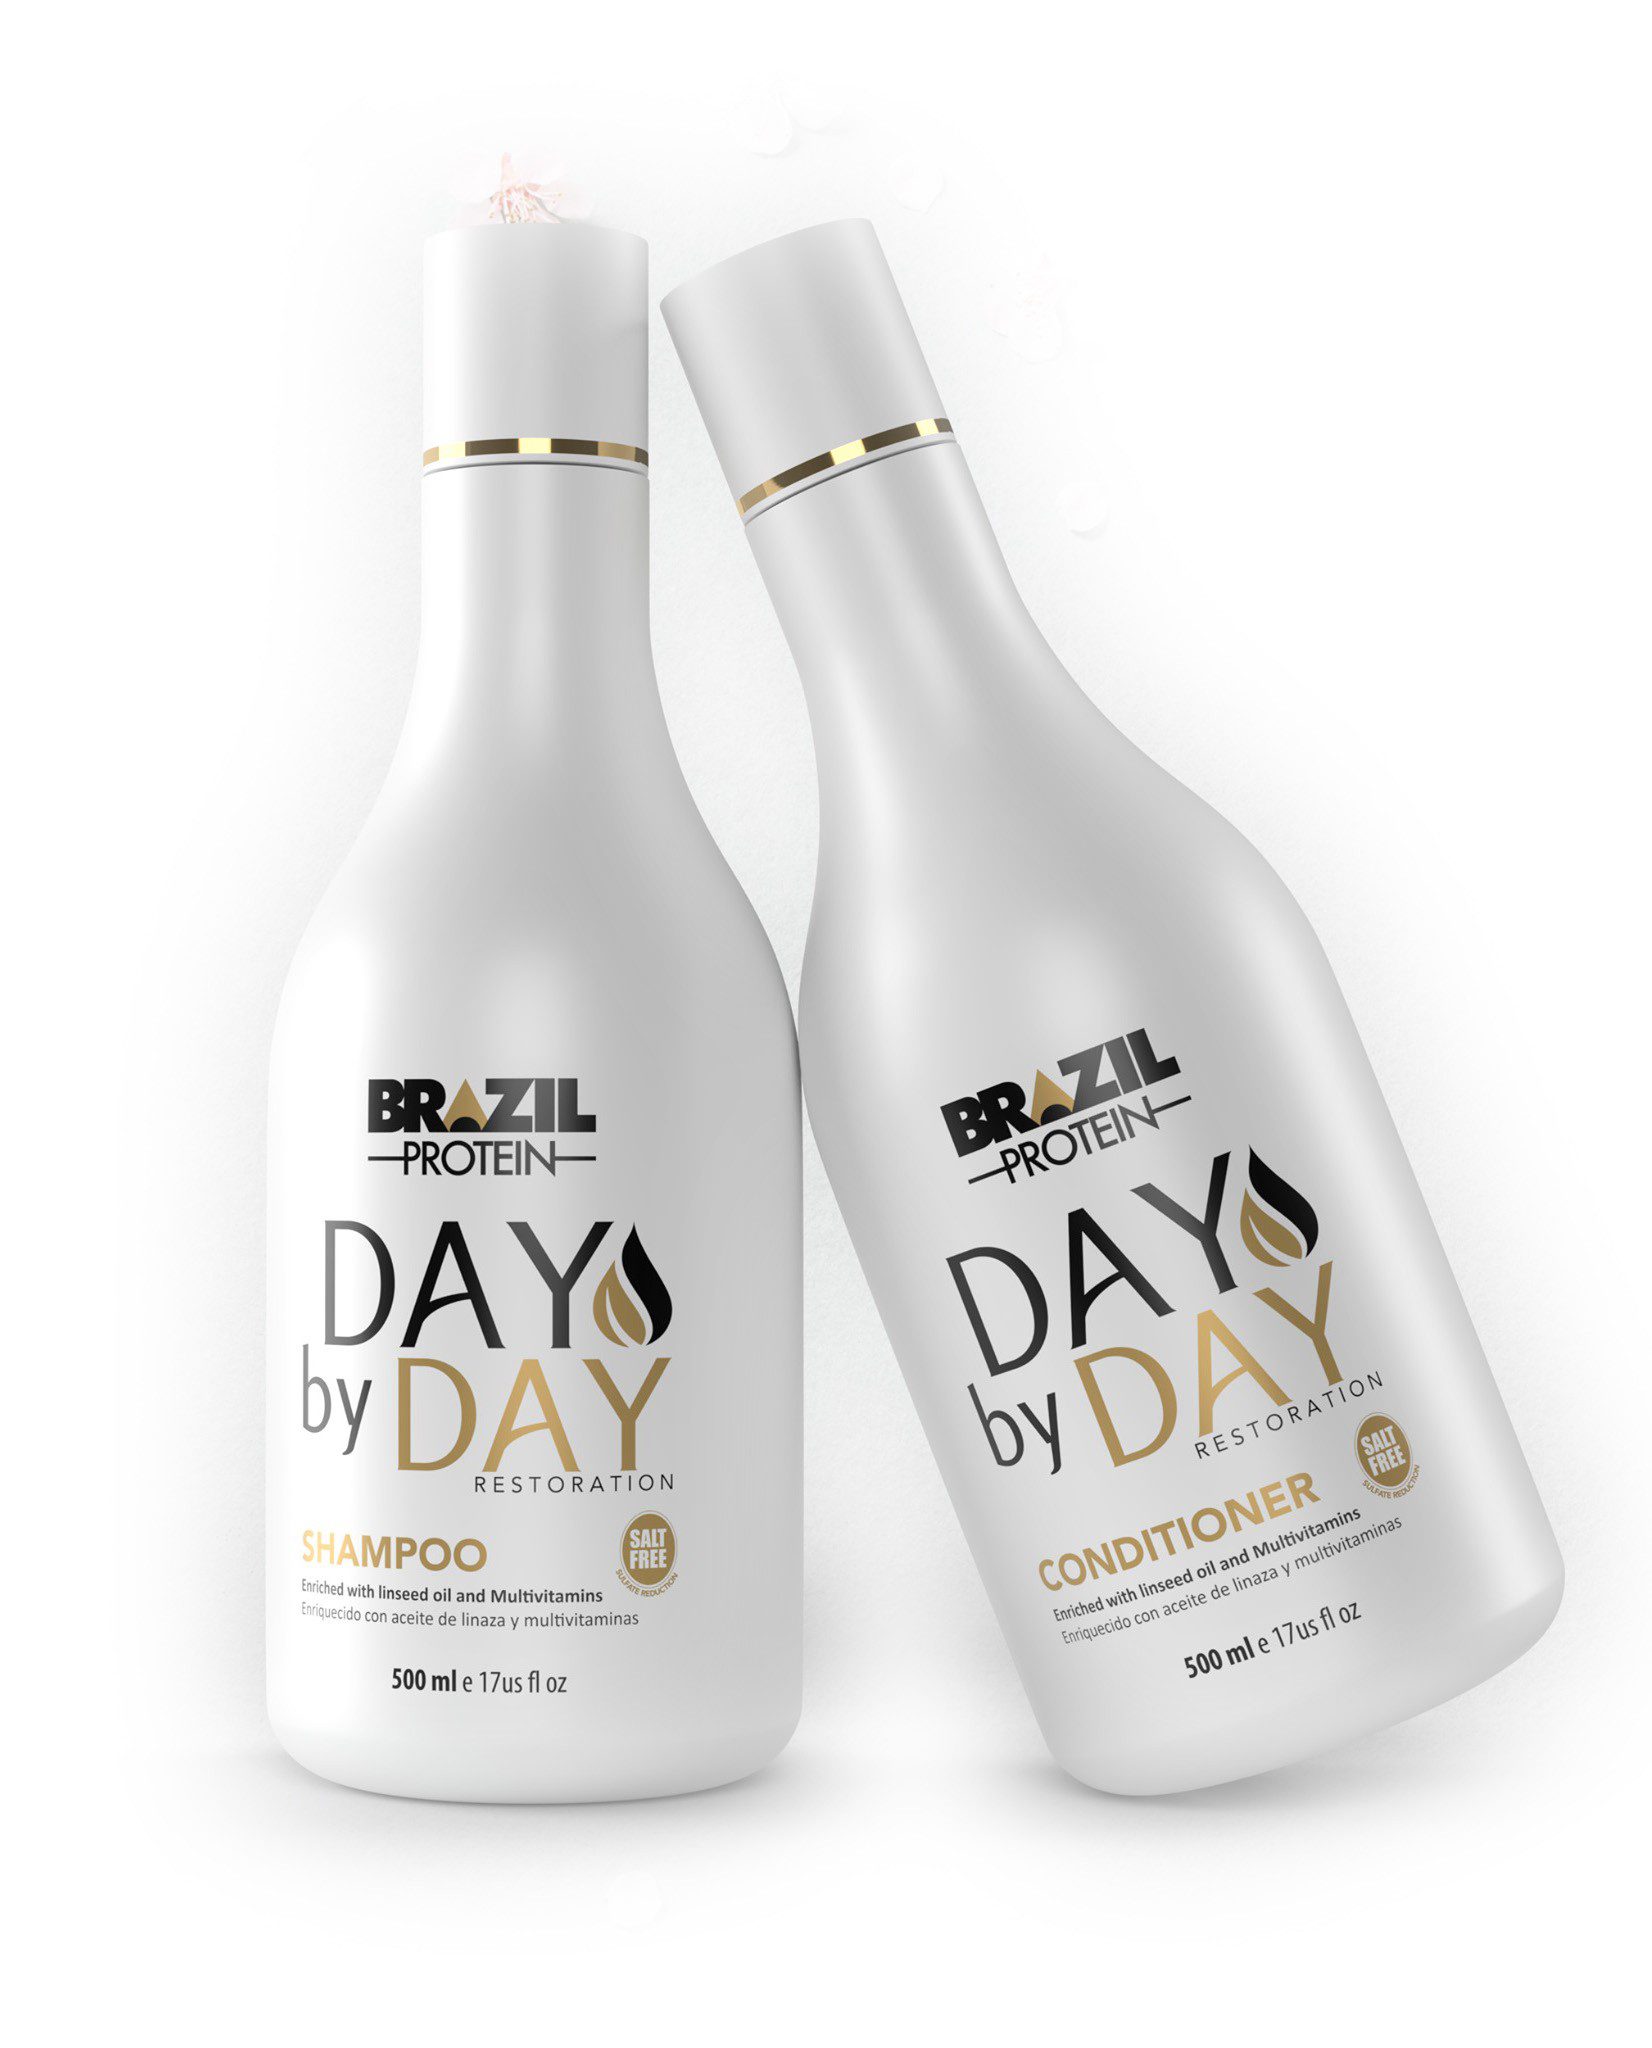 Brazil Protein Day by Day soins à domicile pour les cheveux secs shampooing et revitalisant - 2 x 500ml